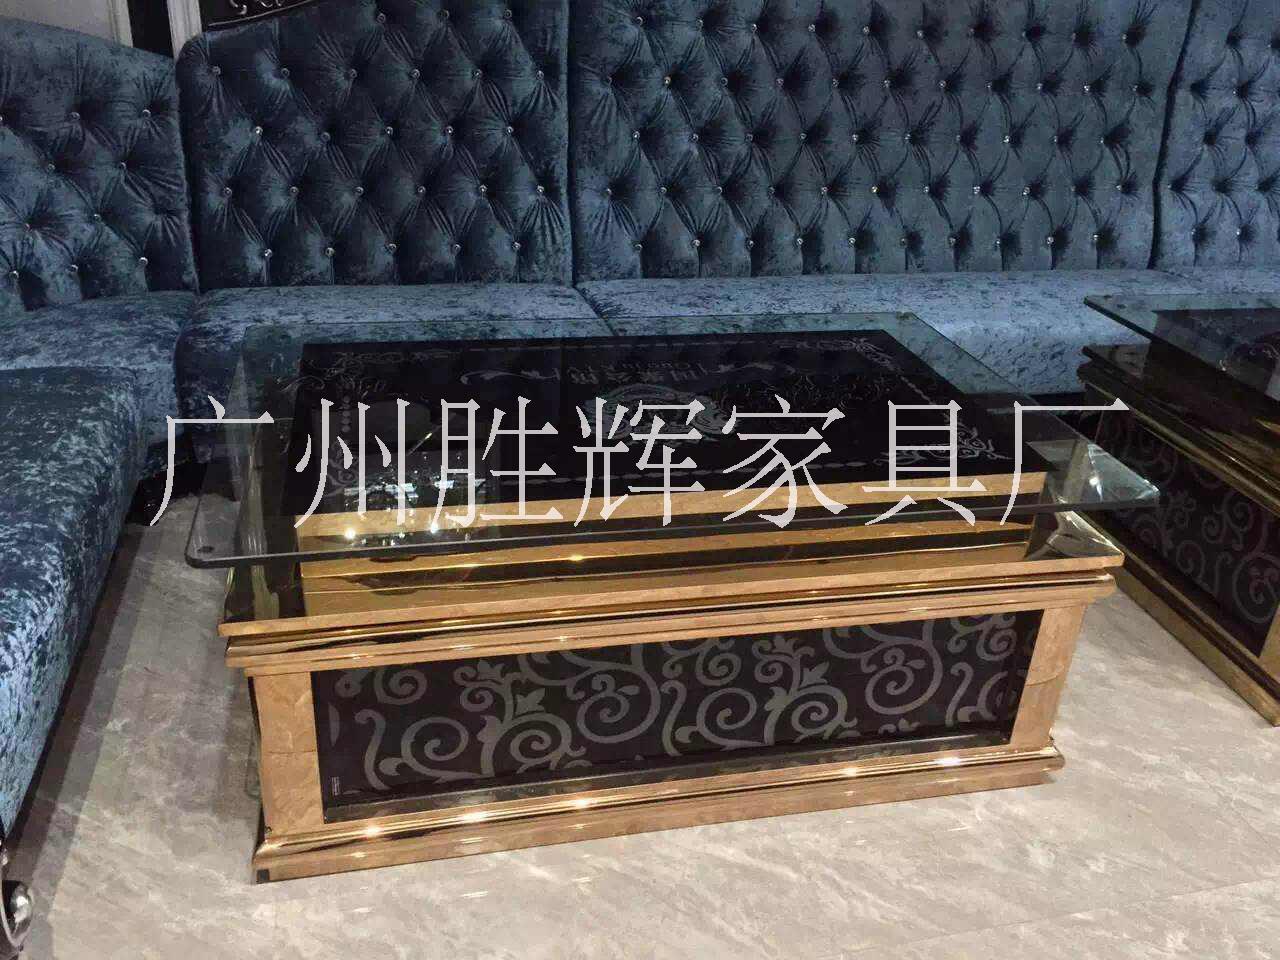 广州市广州高档沙发厂家直销厂家供应用于娱乐沙发的广州高档沙发厂家直销